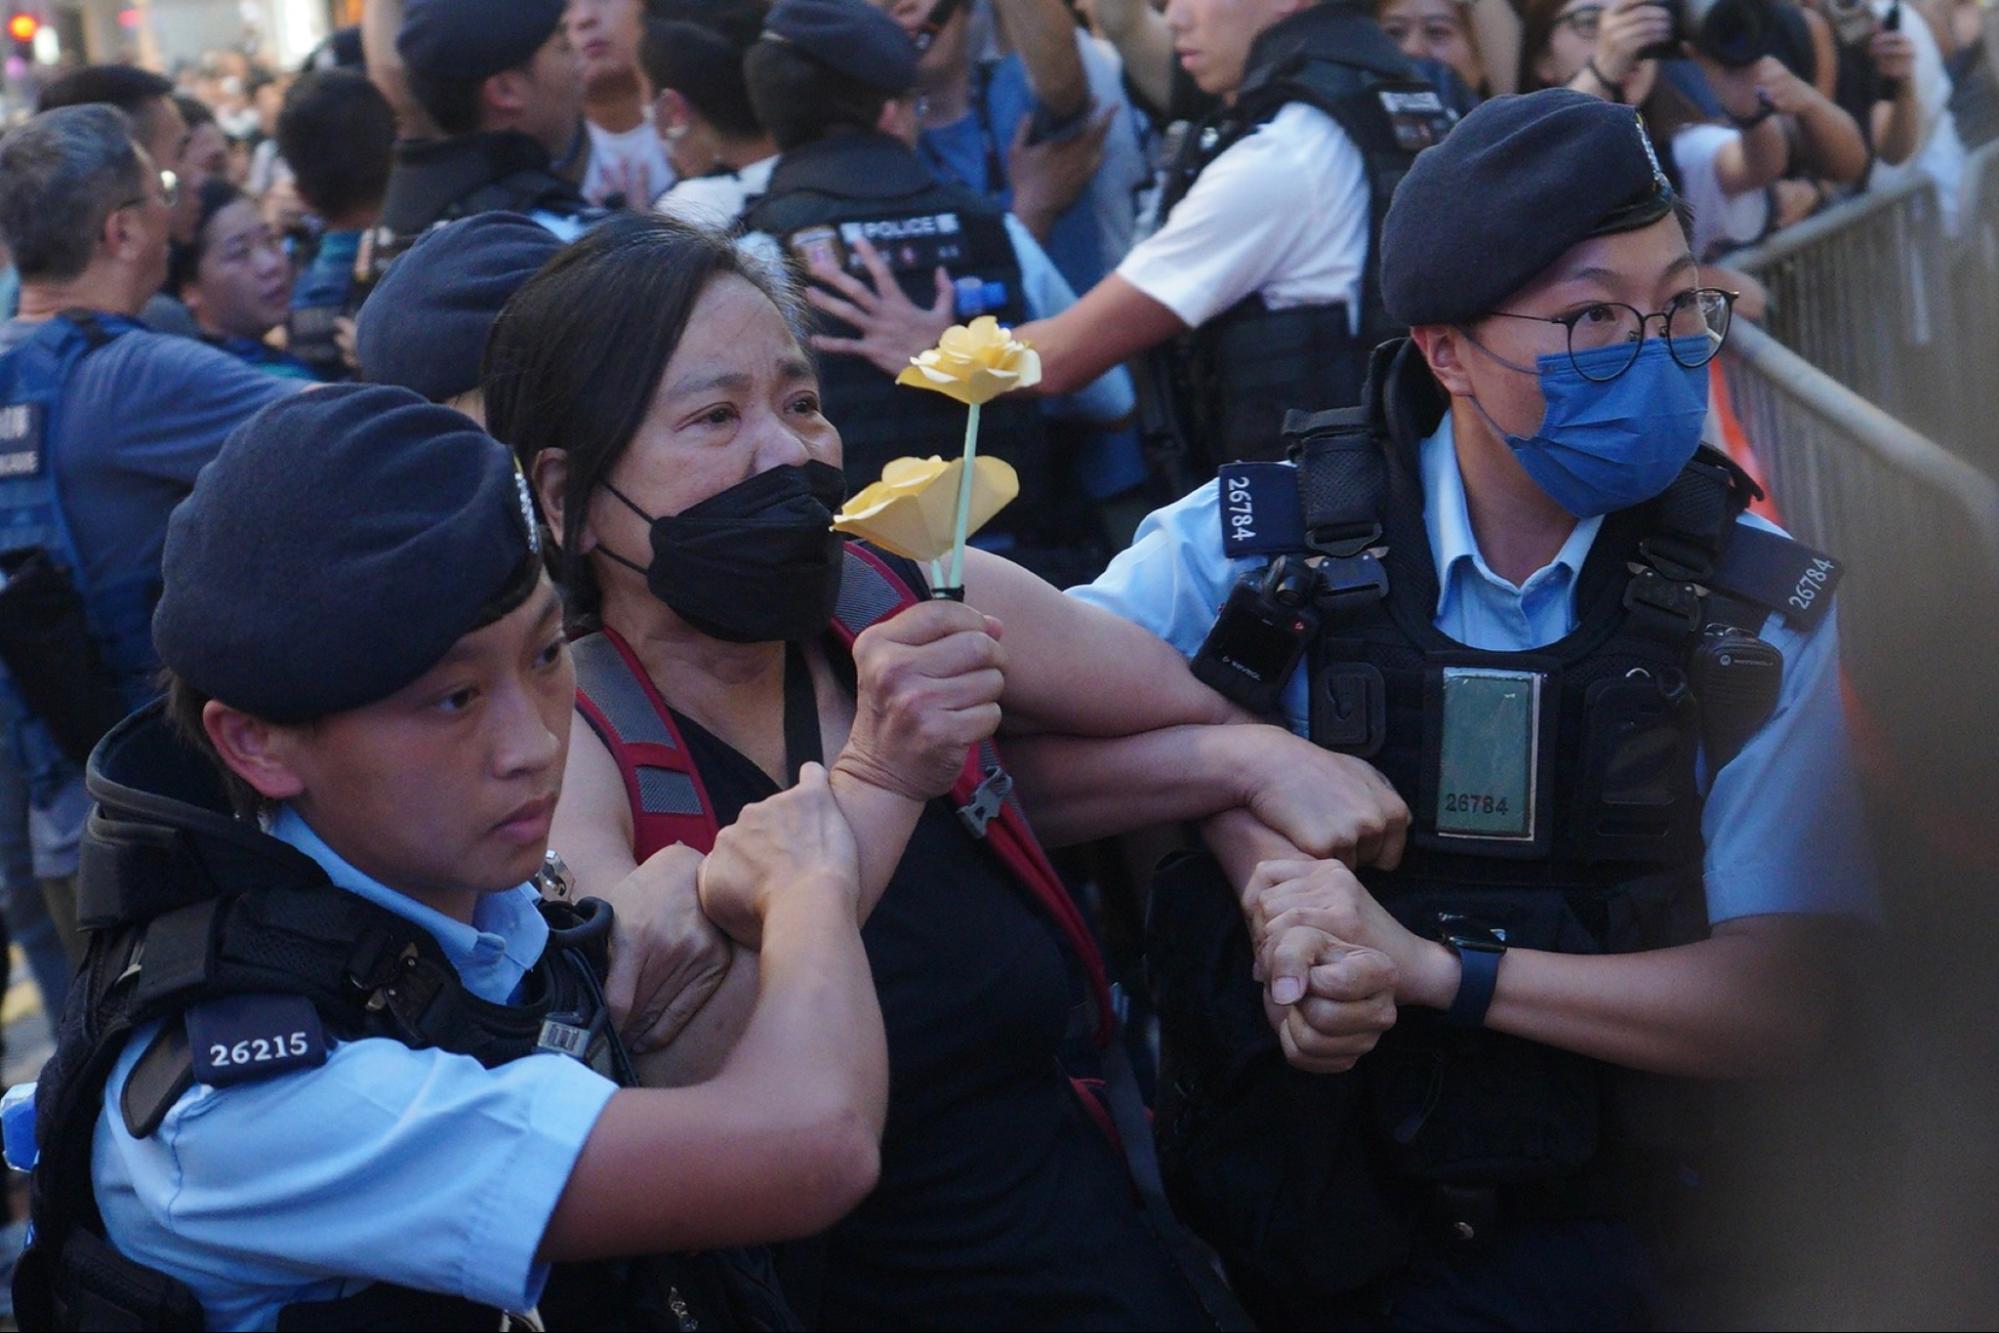 Bà Trần Bảo Anh, Chủ tịch Liên đoàn Dân chủ Xã hội, đã bị cảnh sát Hồng Kông bắt đi hôm 04/06/2023. (Ảnh: Benson Lau/The Epoch Times)